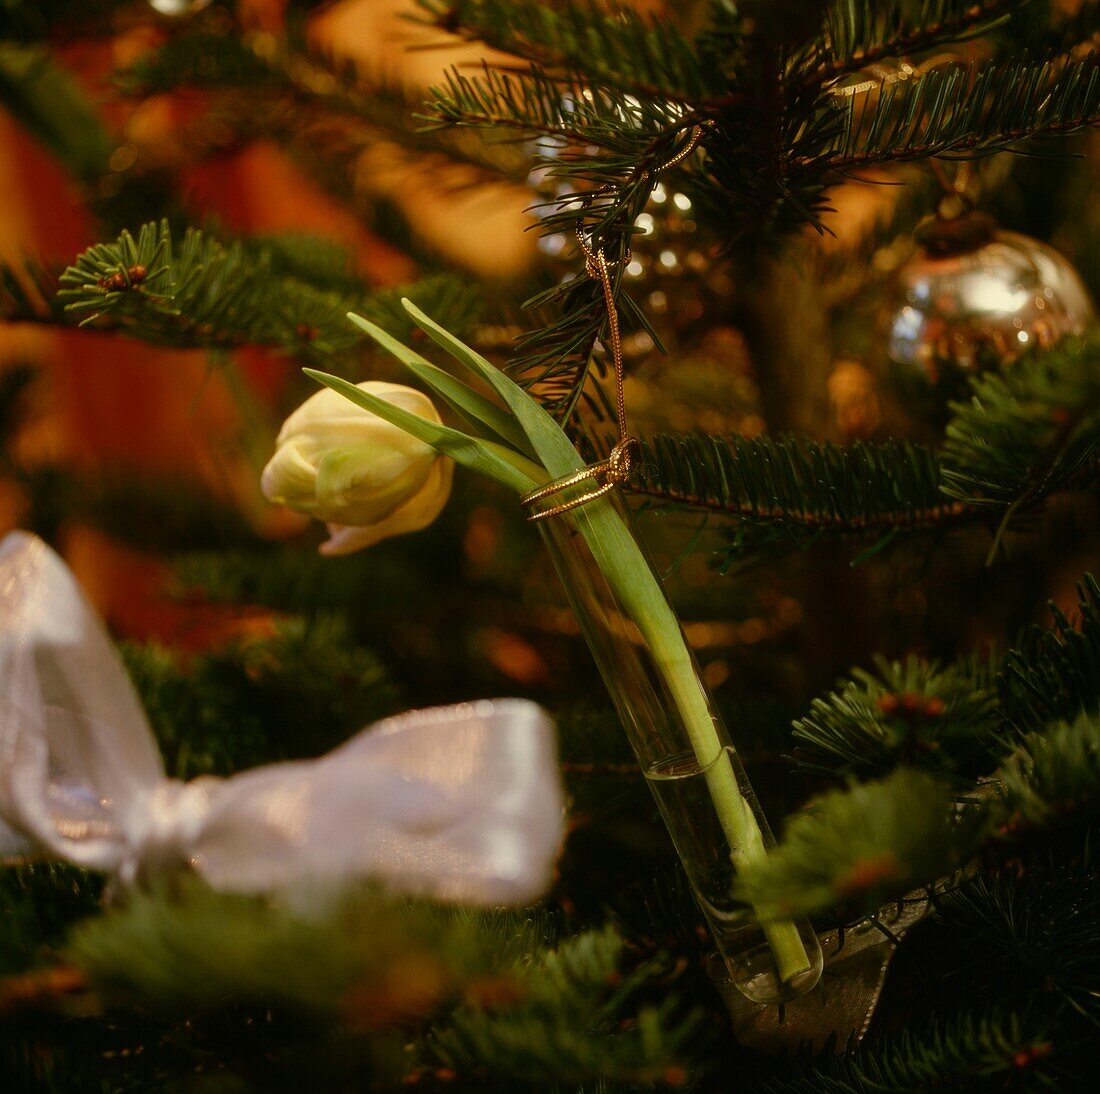 Einstielige Blume hängt am Weihnachtsbaum